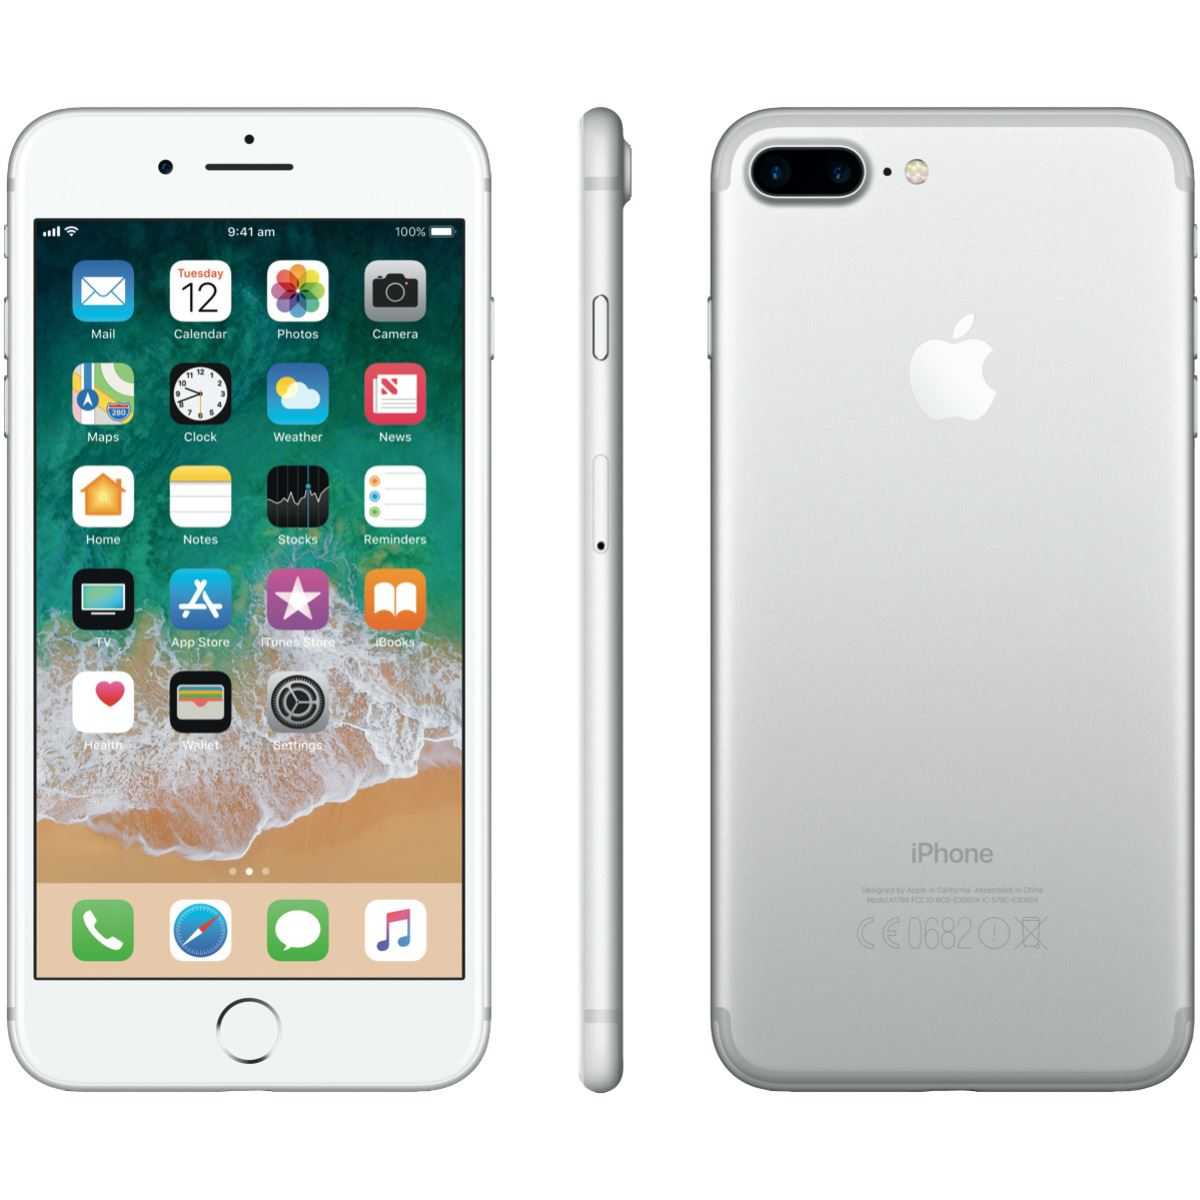 iPhone 7 и его старшего брата iPhone 7 Plus нельзя назвать полностью новыми смартфонами, поскольку они мало того, что внешне похожи на модели предыдущих поколений, так у